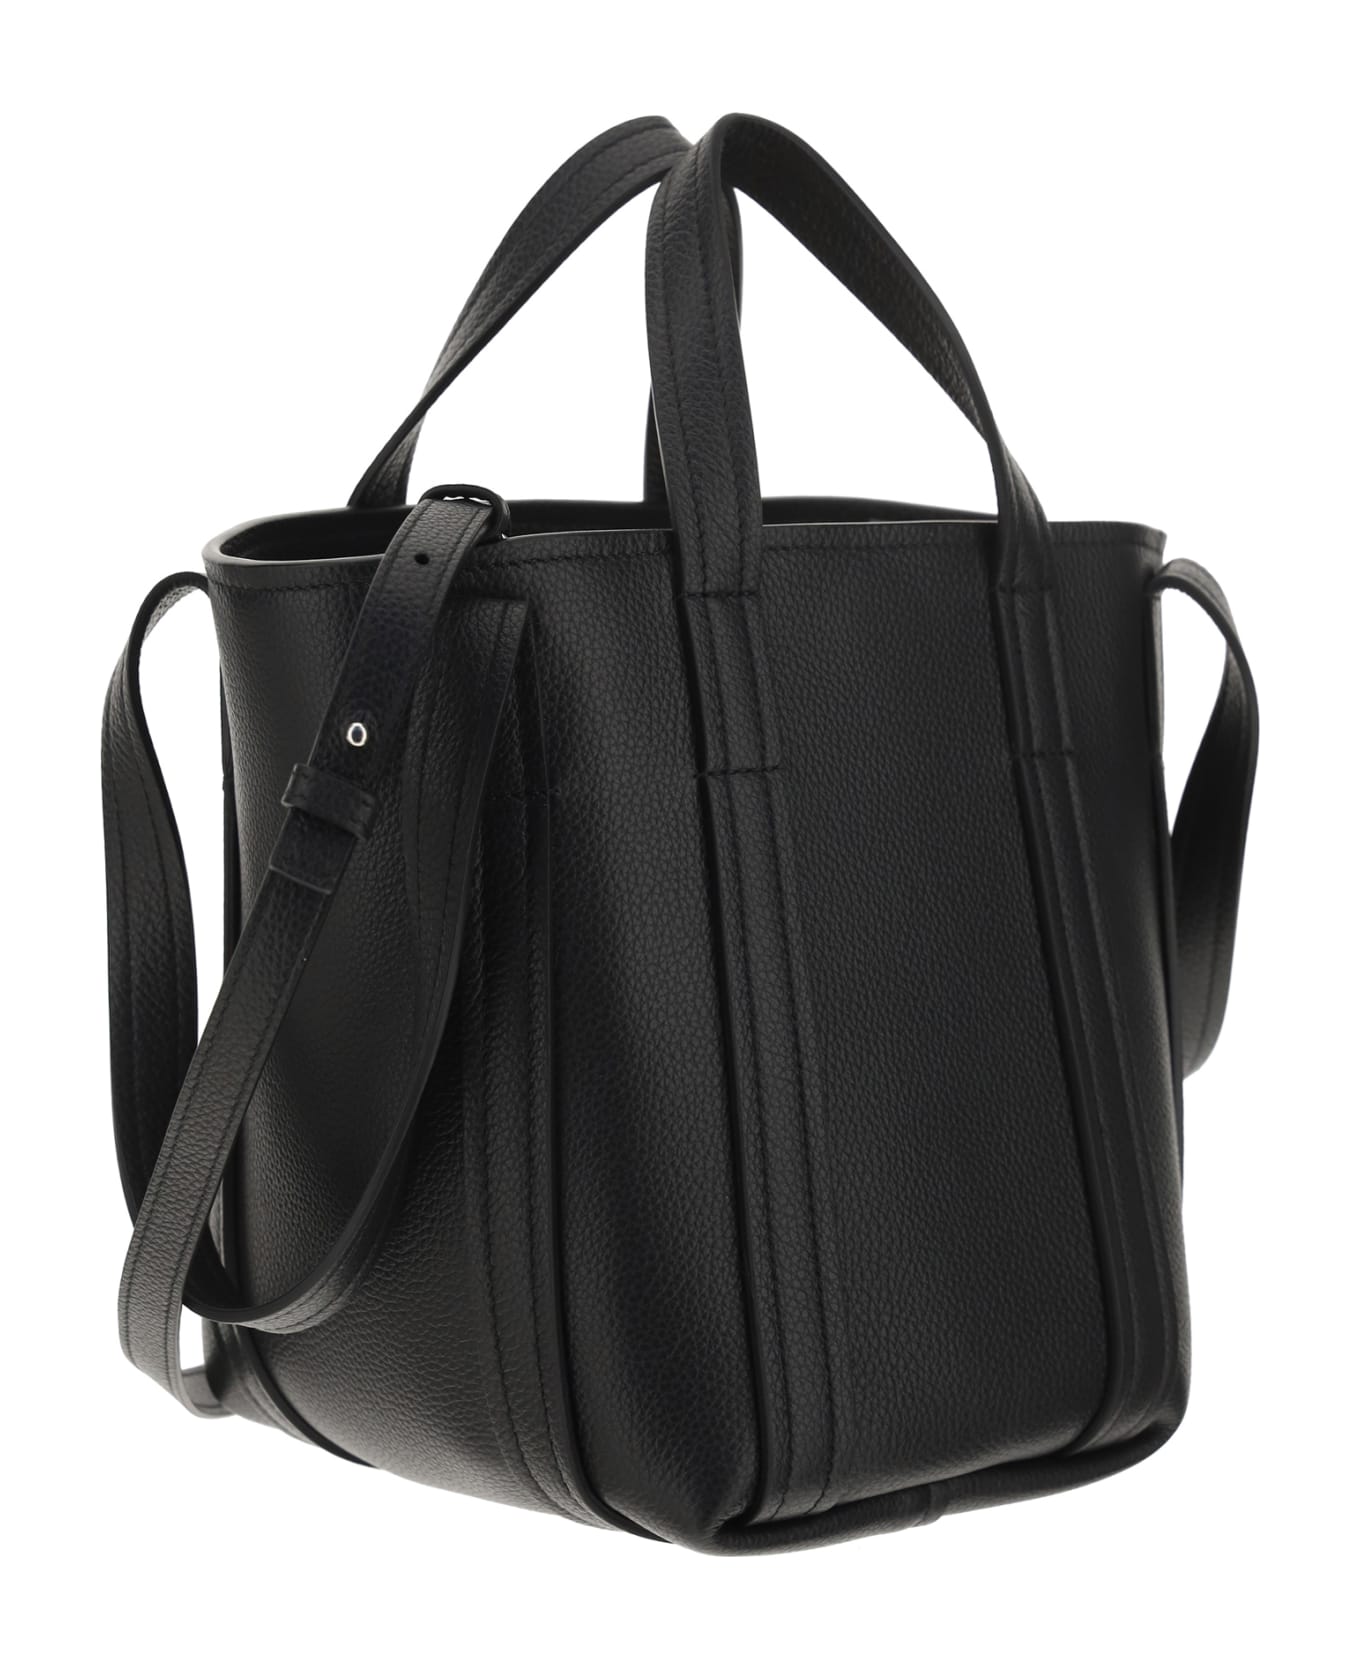 Balenciaga Everyday Handbag - Black